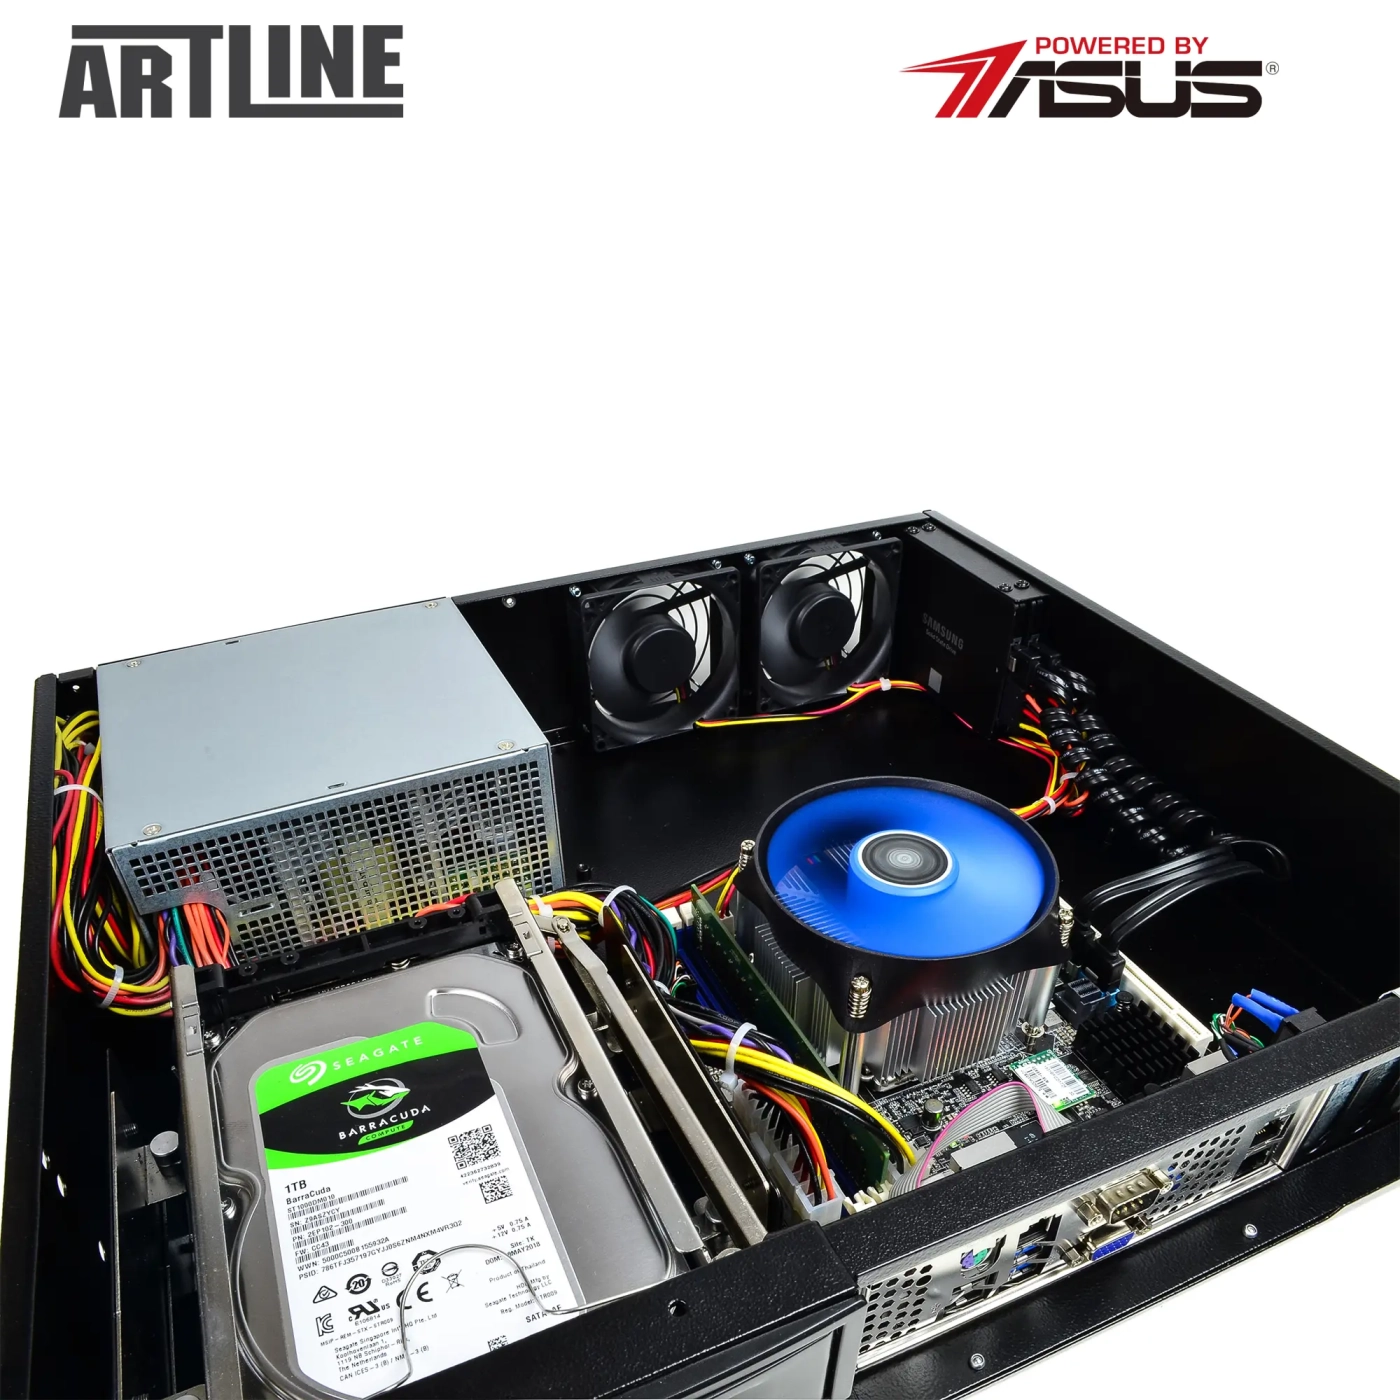 Купить Сервер ARTLINE Business R35 (R35v52) - фото 10